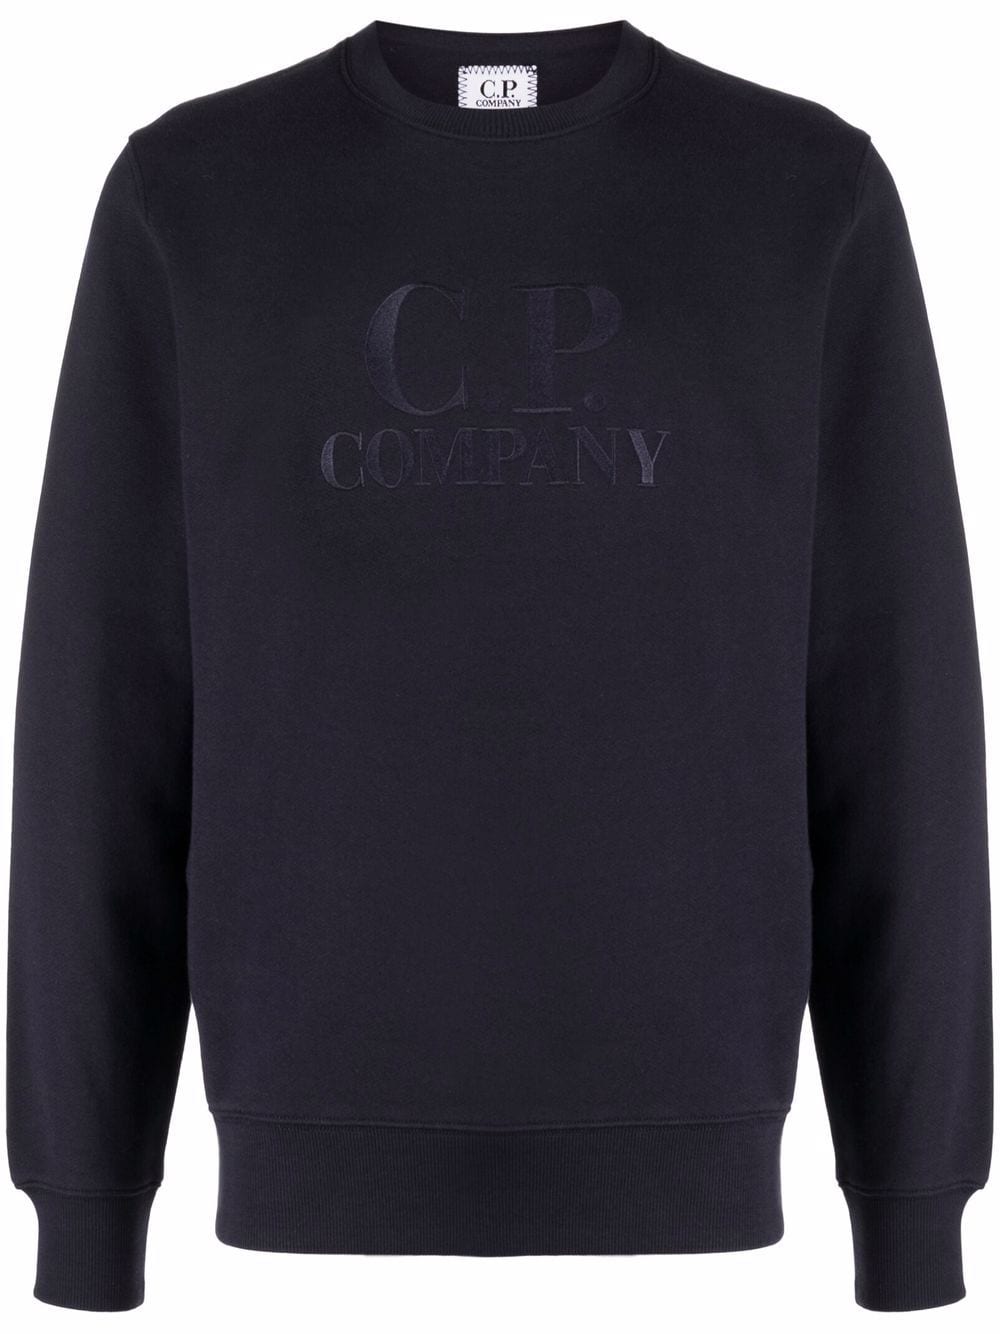 фото C.p. company свитер с вышитым логотипом